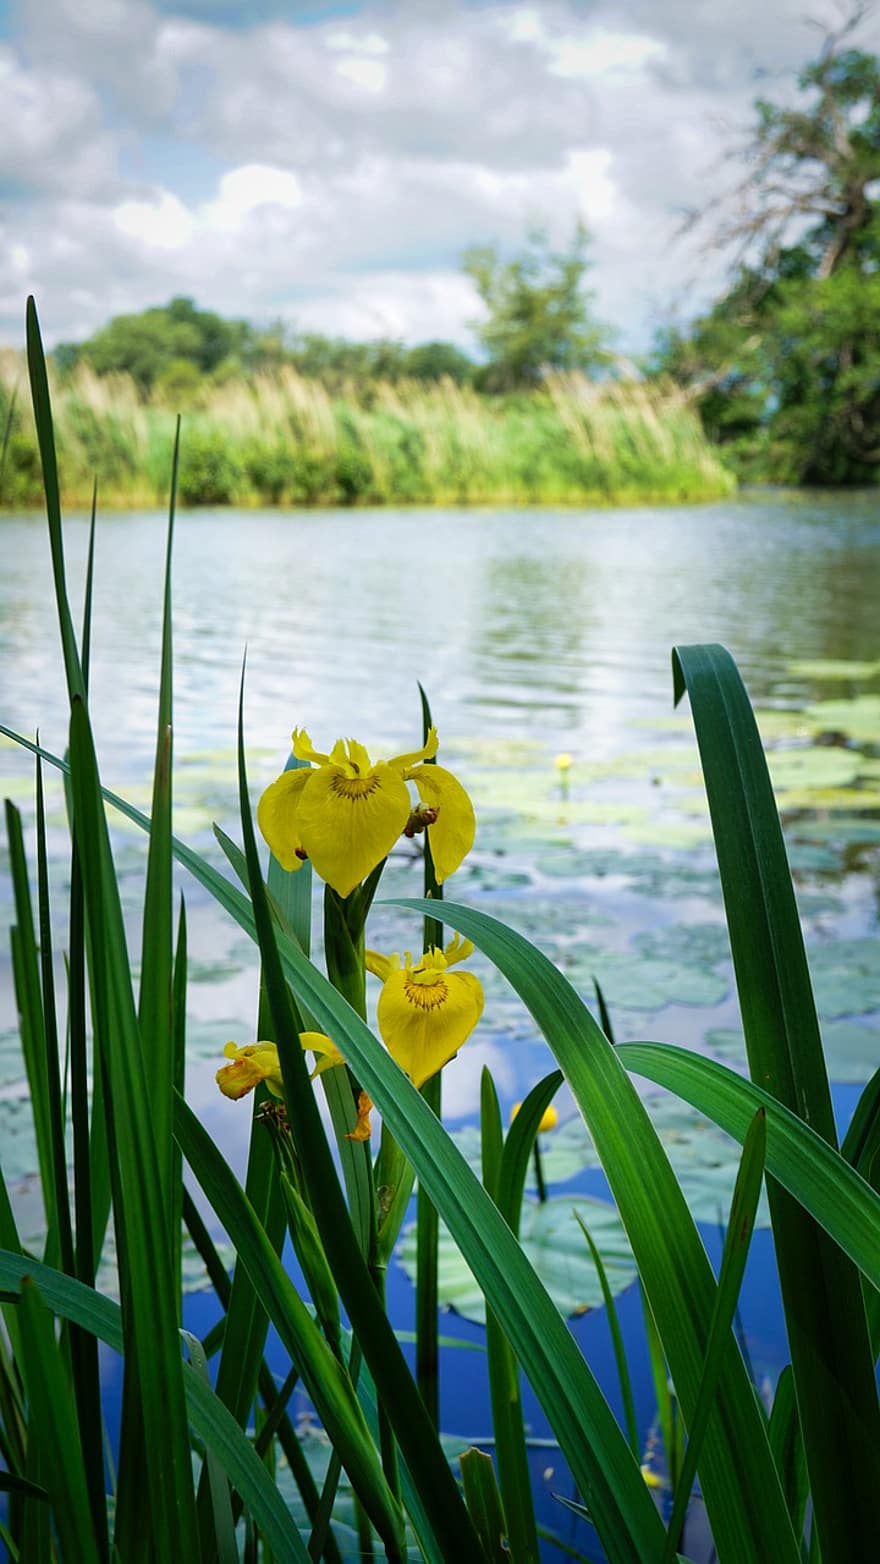 iris kuning, kolam, bunga-bunga, bunga kuning, alam, danau, bunga, warna hijau, musim panas, menanam, kuning